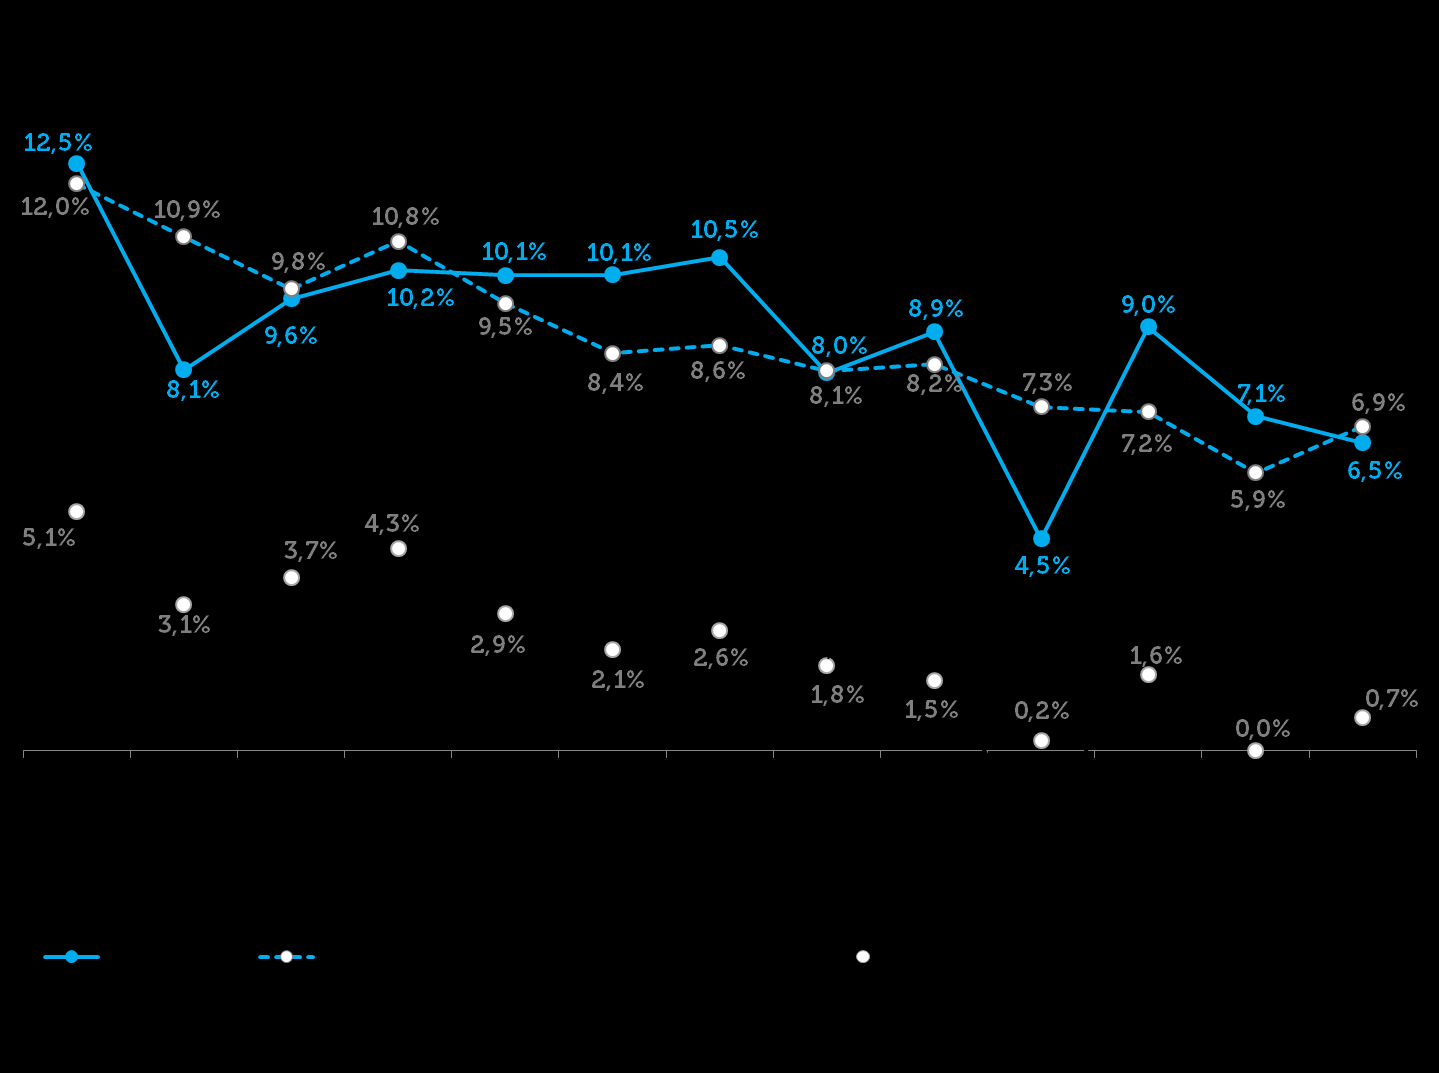 VAREJO AMPLIADO CRESCE 0,4% EM MAIO, APONTA ICVA Percentual é calculado a partir da receita de vendas deflacionada pelo IPCA em comparação com maio de 2014; no índice nominal, o crescimento foi de